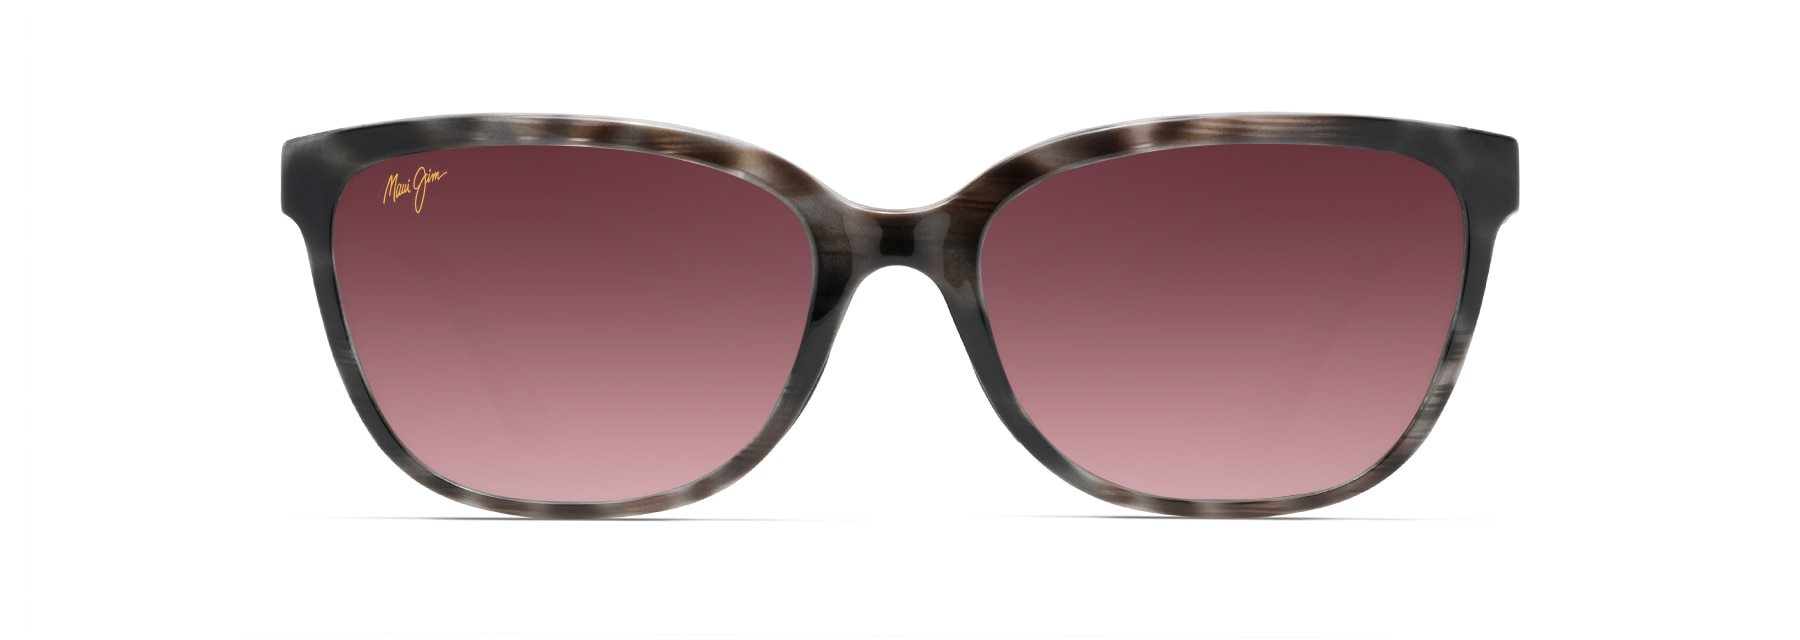 MyMaui Honi MM758-002 Sunglasses